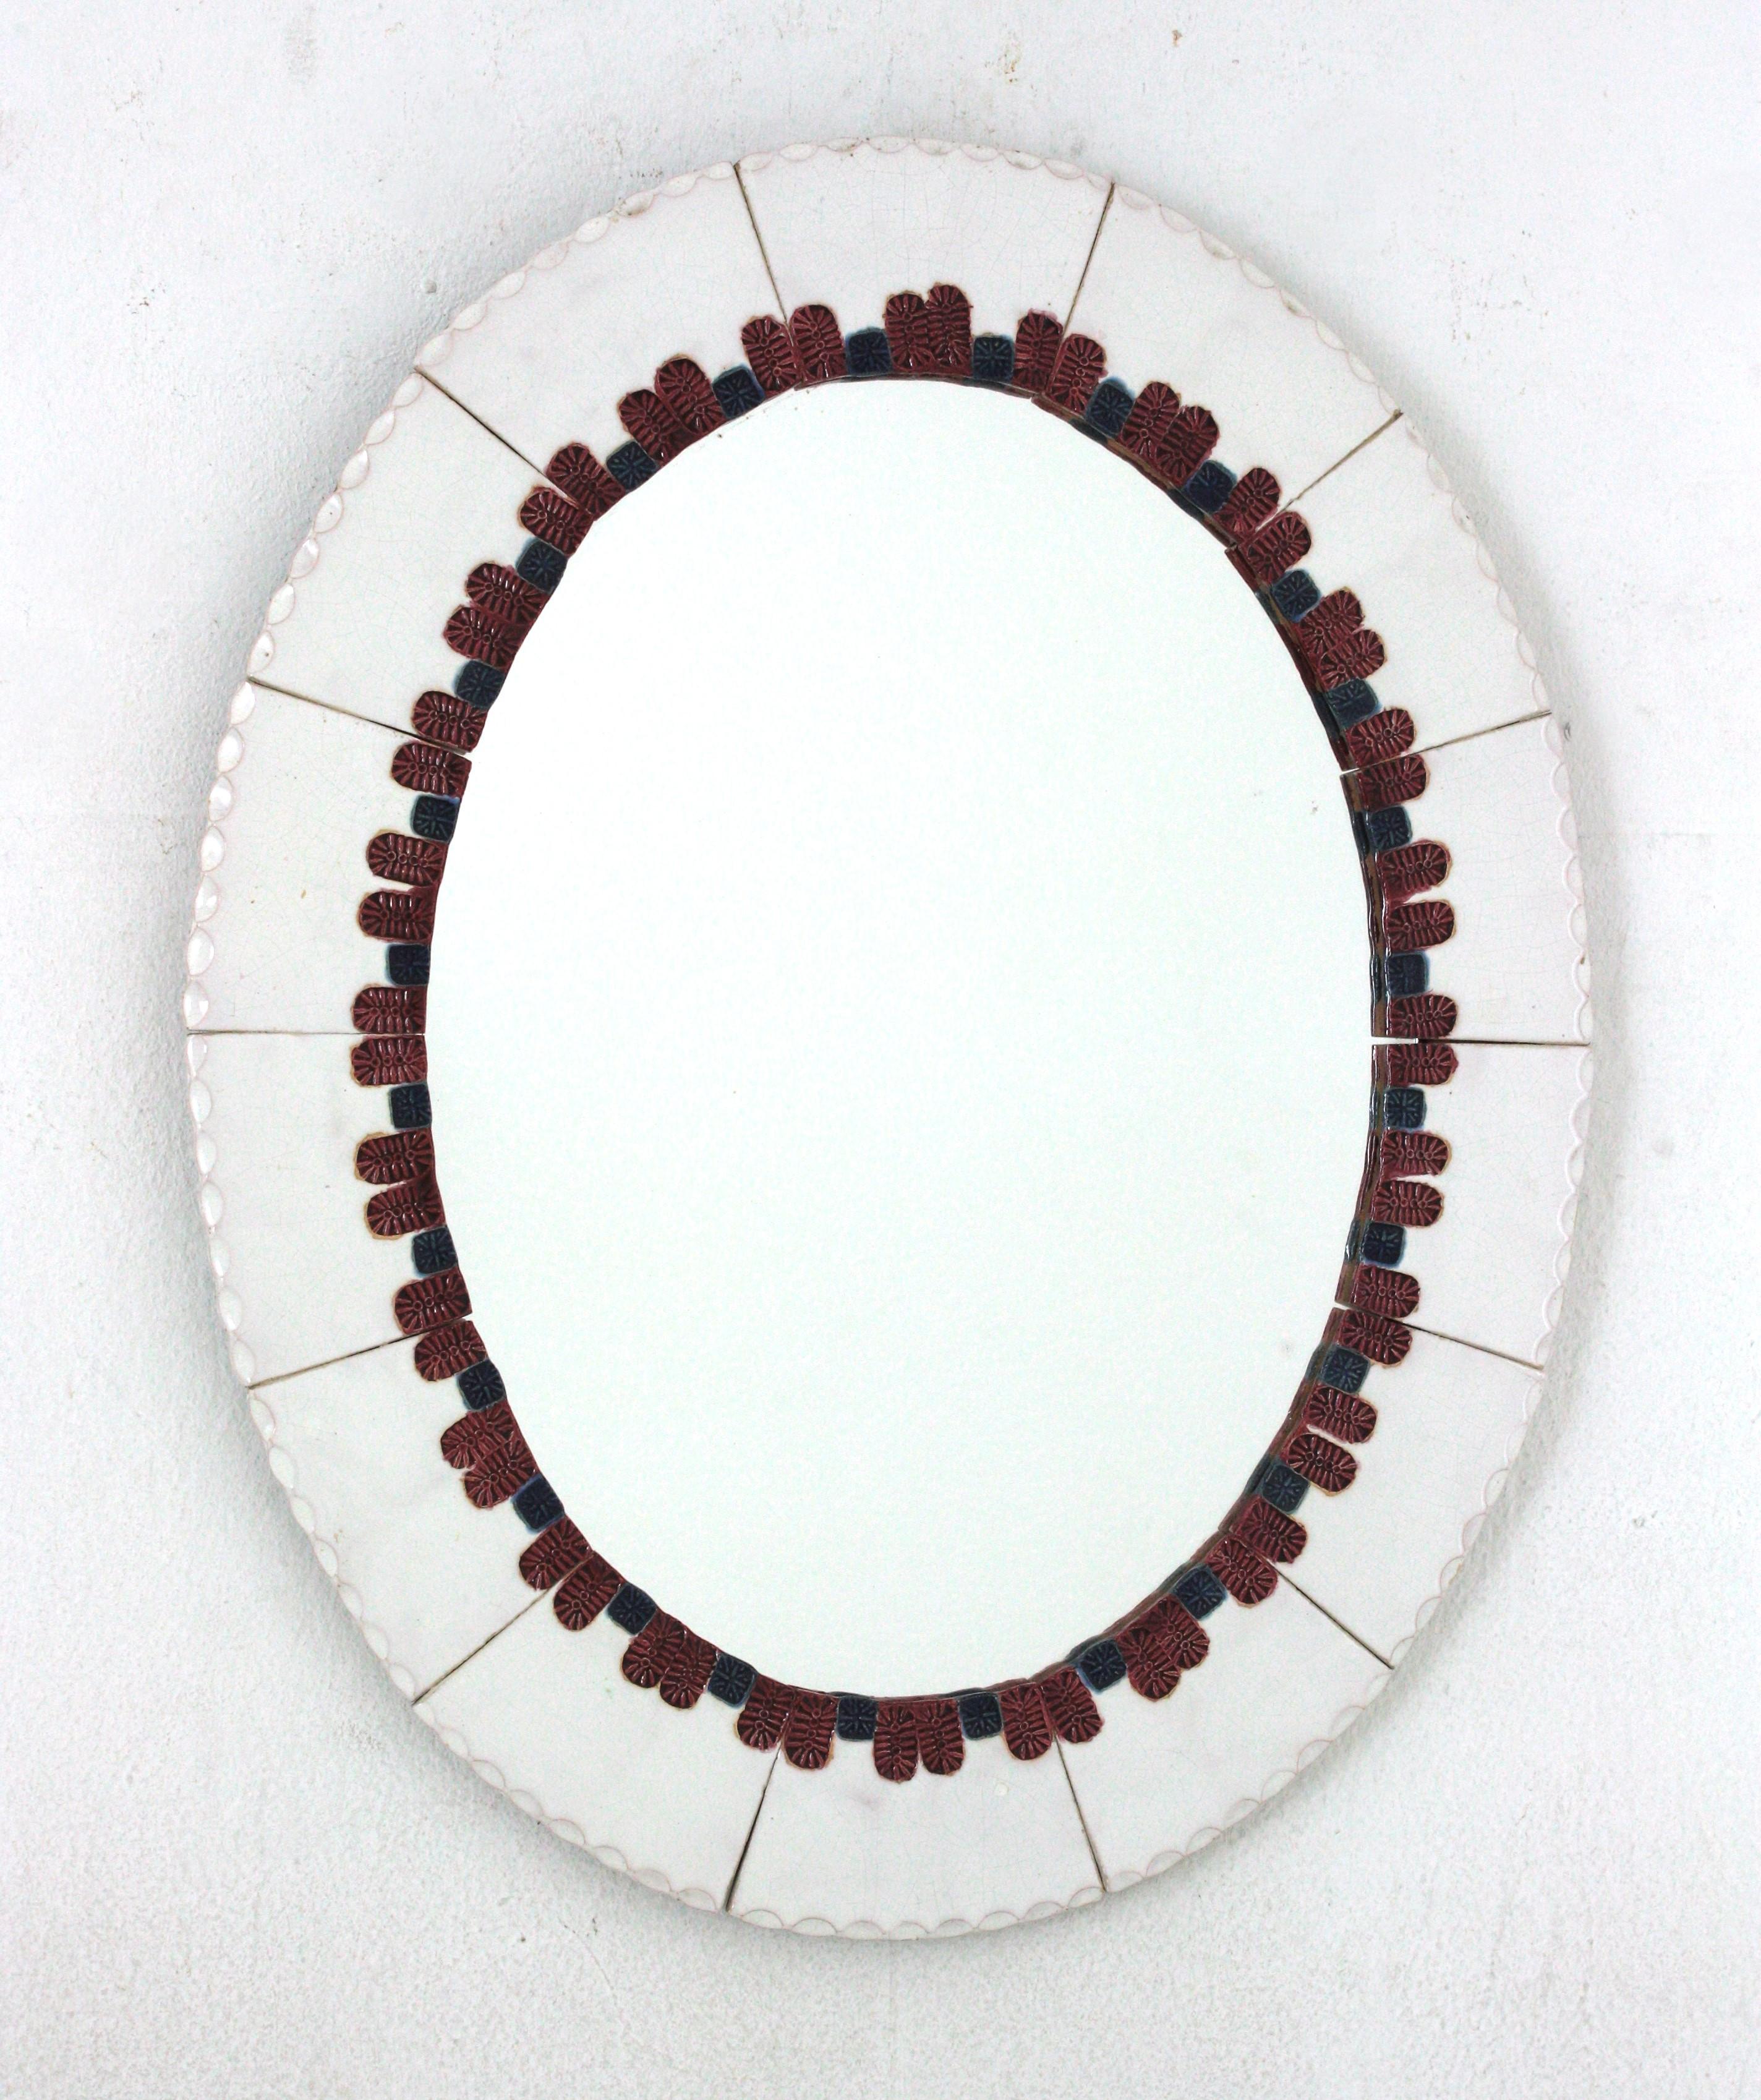 Miroir en céramique de style moderne du milieu du siècle. Fabriqué en Espagne, années 1960.
Forme ovale et cadre coloré.
Il est composé de carreaux de céramique émaillée de couleur blanche. Un motif décoratif bleu et rouge rosé entoure le miroir en